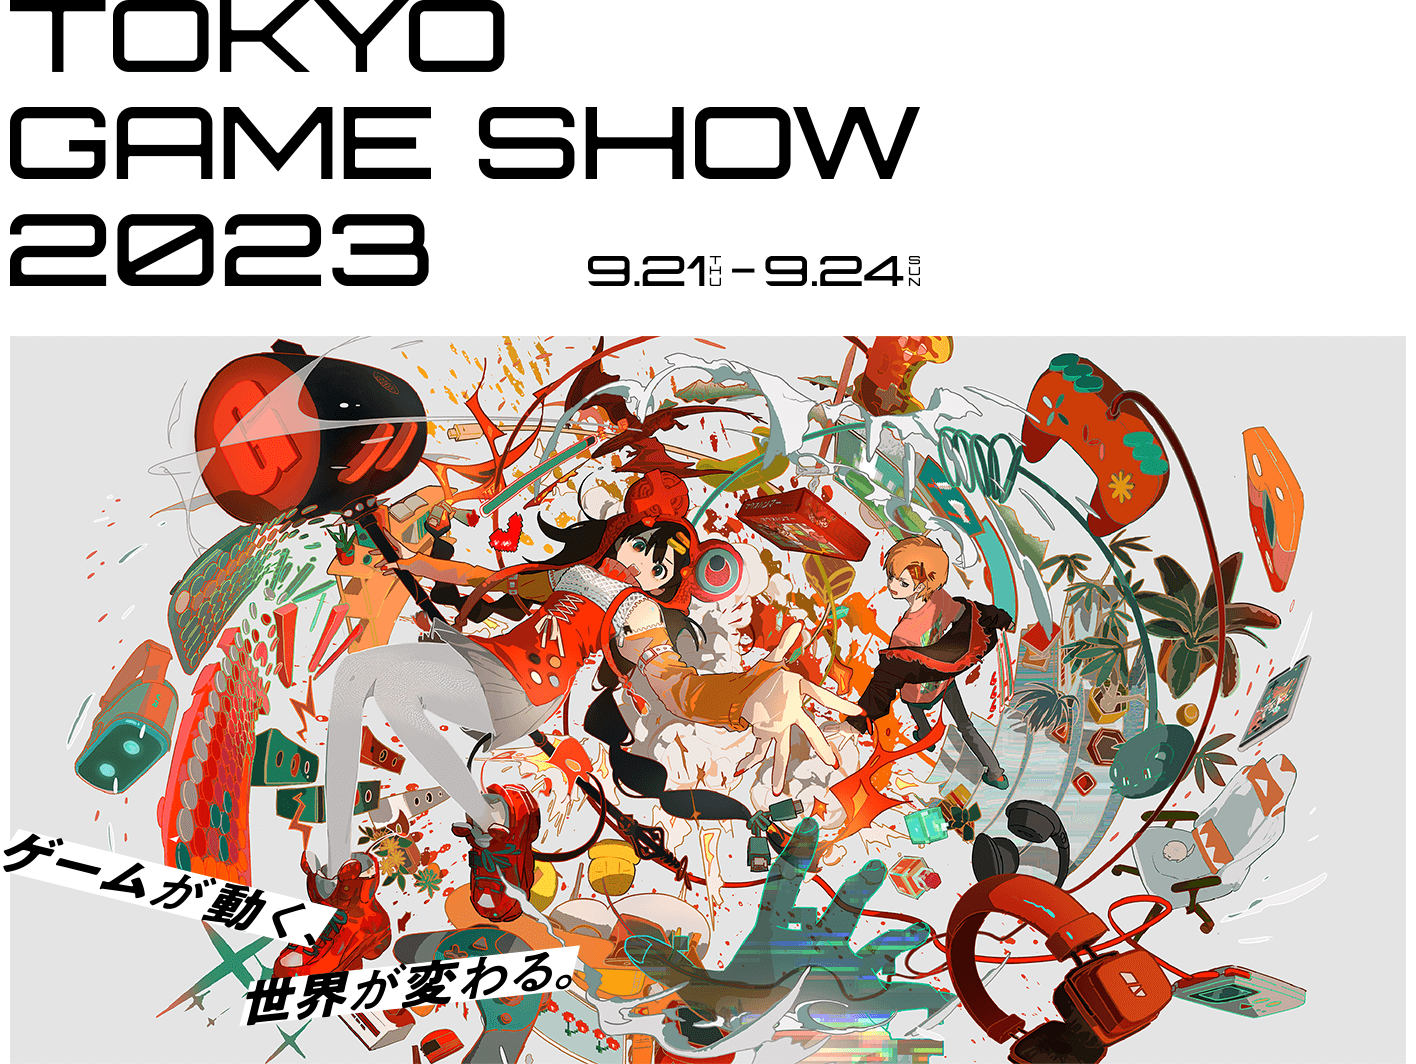 今週21日～24日は『東京ゲームショウ2023』が開催されます！🎮
HAOコスプレイヤーメンバーのスケジュールをお伝えします。